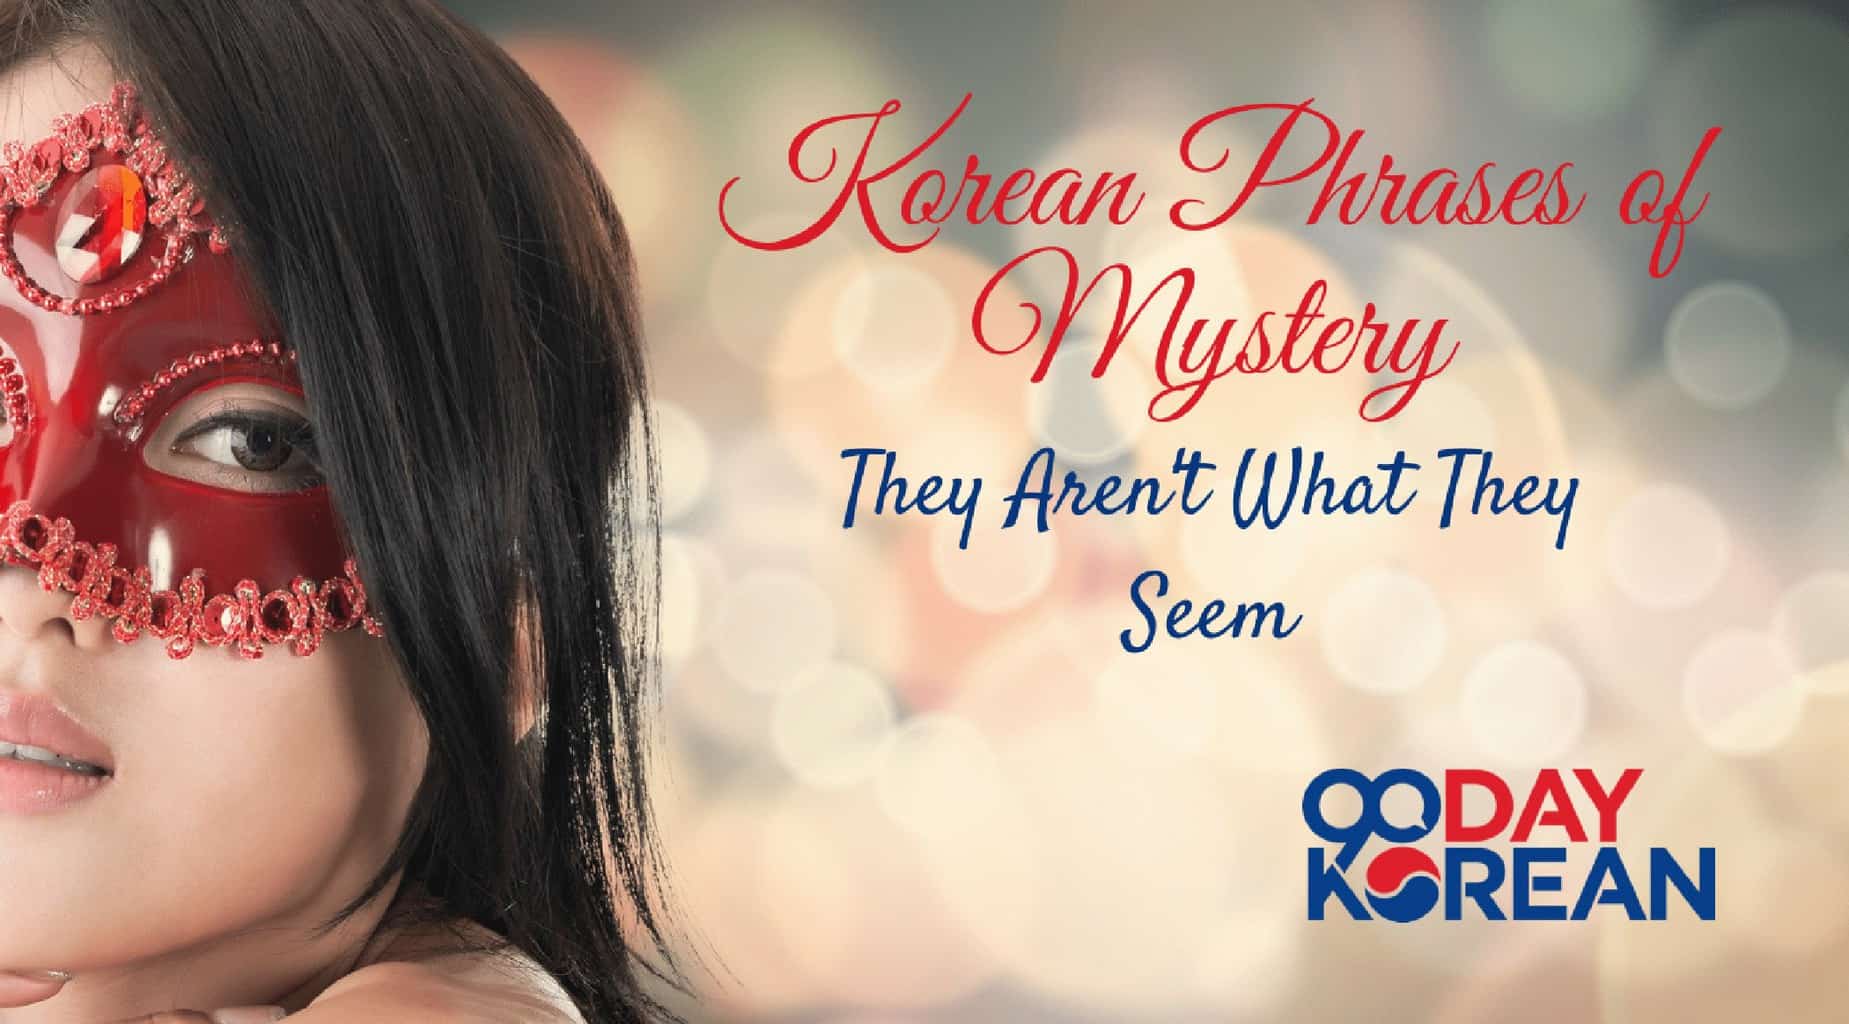 10 Mysterious Korean Phrases